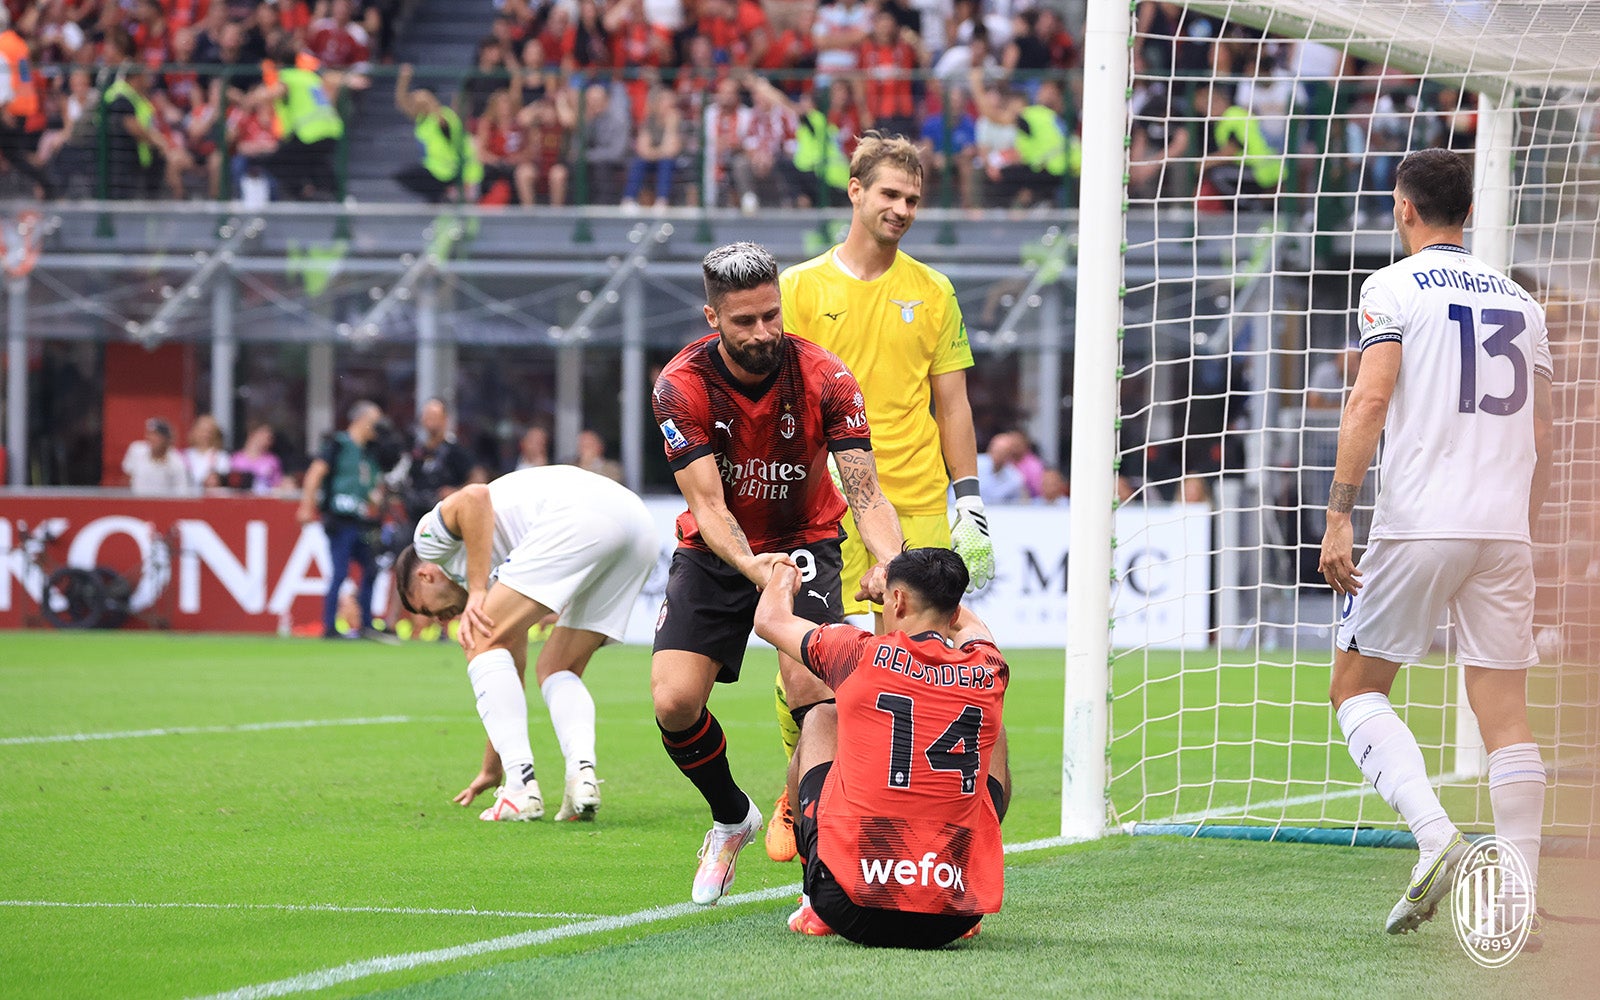 Serie A [  ] — AC Milan vs  Lazio Palpite: Under 2.5 Goals @1,66 O AC Milan não está num bom momento e  sofreu 6 empates nos últimos 10 jogos. Quanto